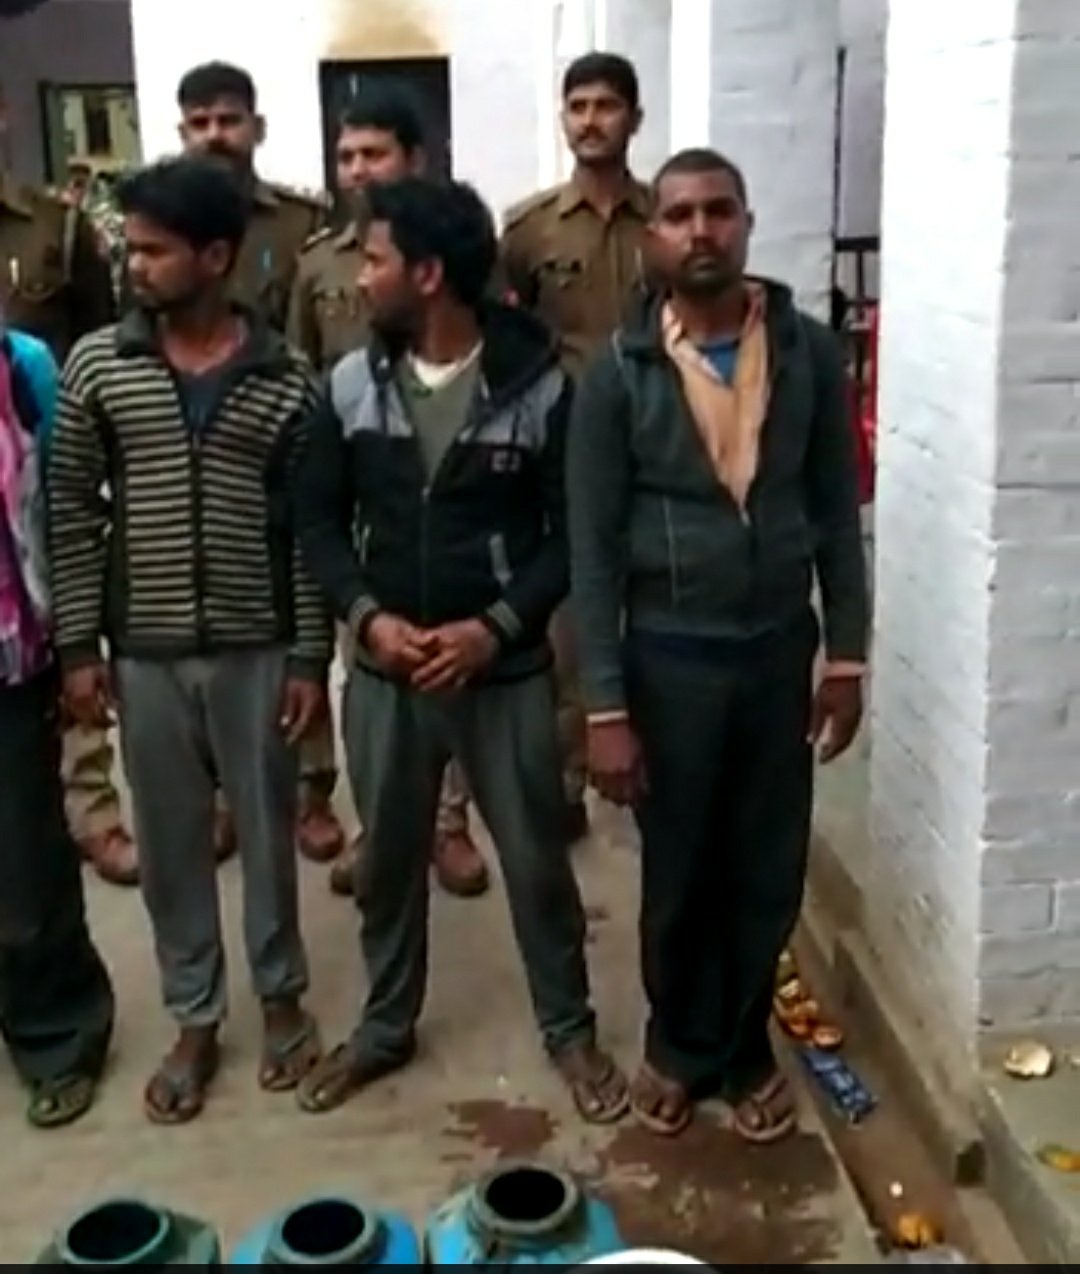 25 हजार रुपए का इनामी बदमाश हथियारों समेत गिरफ्तार | New India Times